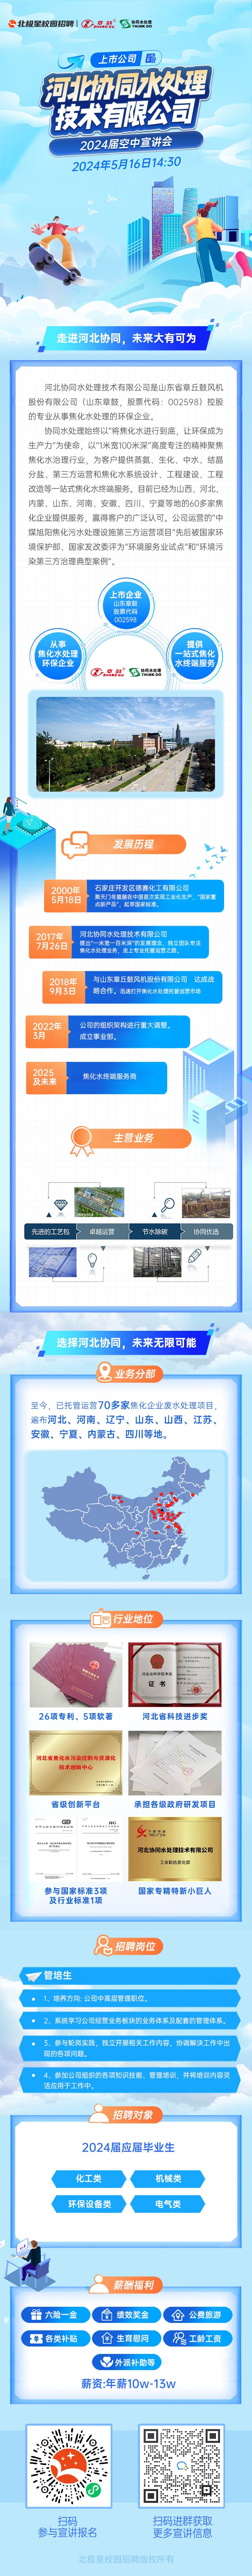 河北协同水处理技术有限公司空中宣讲海报.png